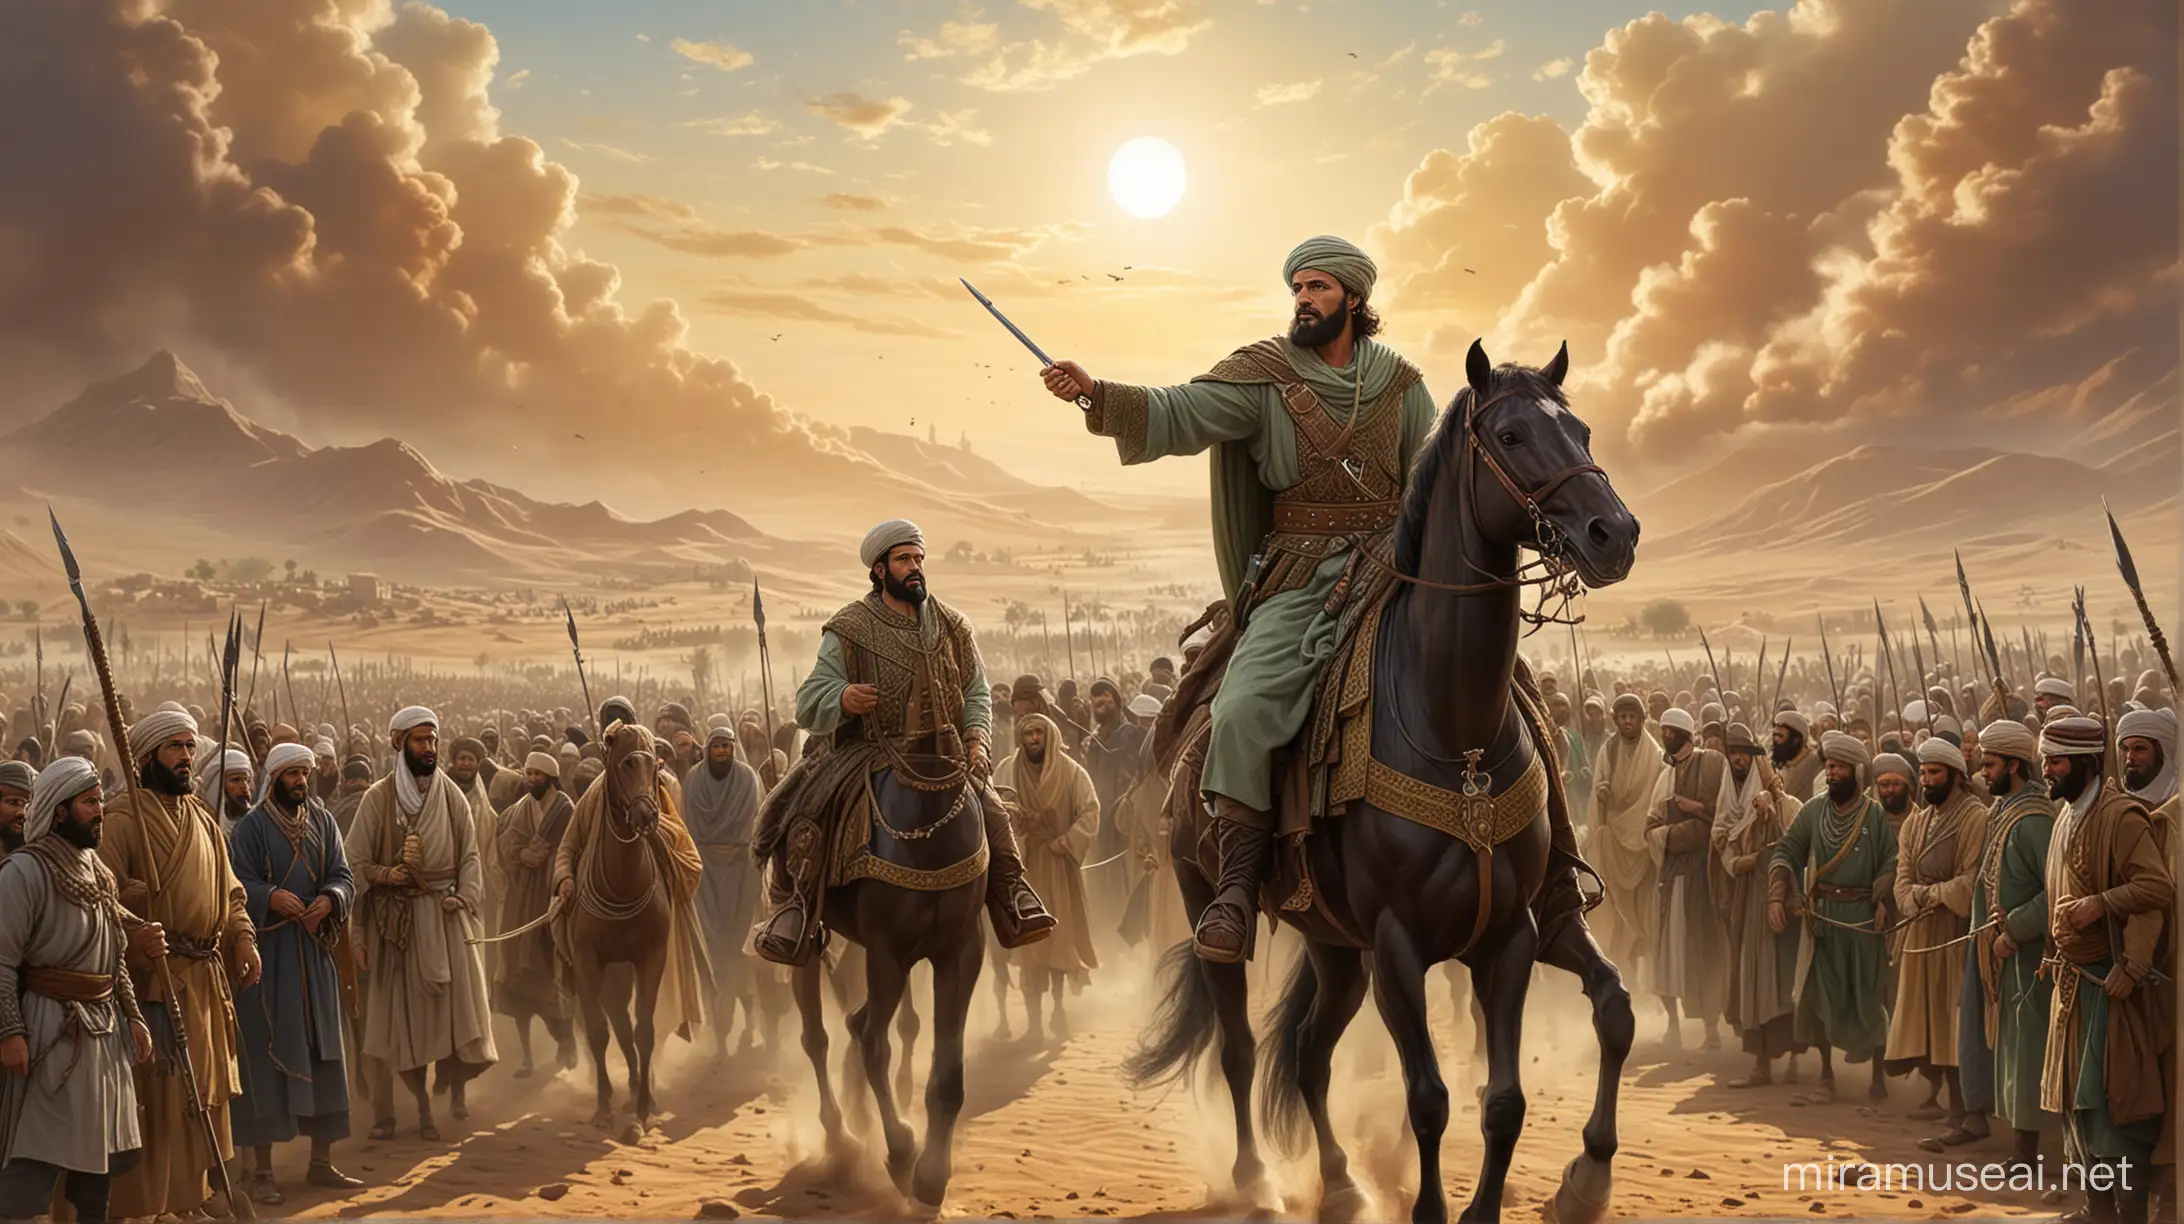 Khalid ibn alWalid Embracing Islam Noble Warrior of the Rashidun Caliphate